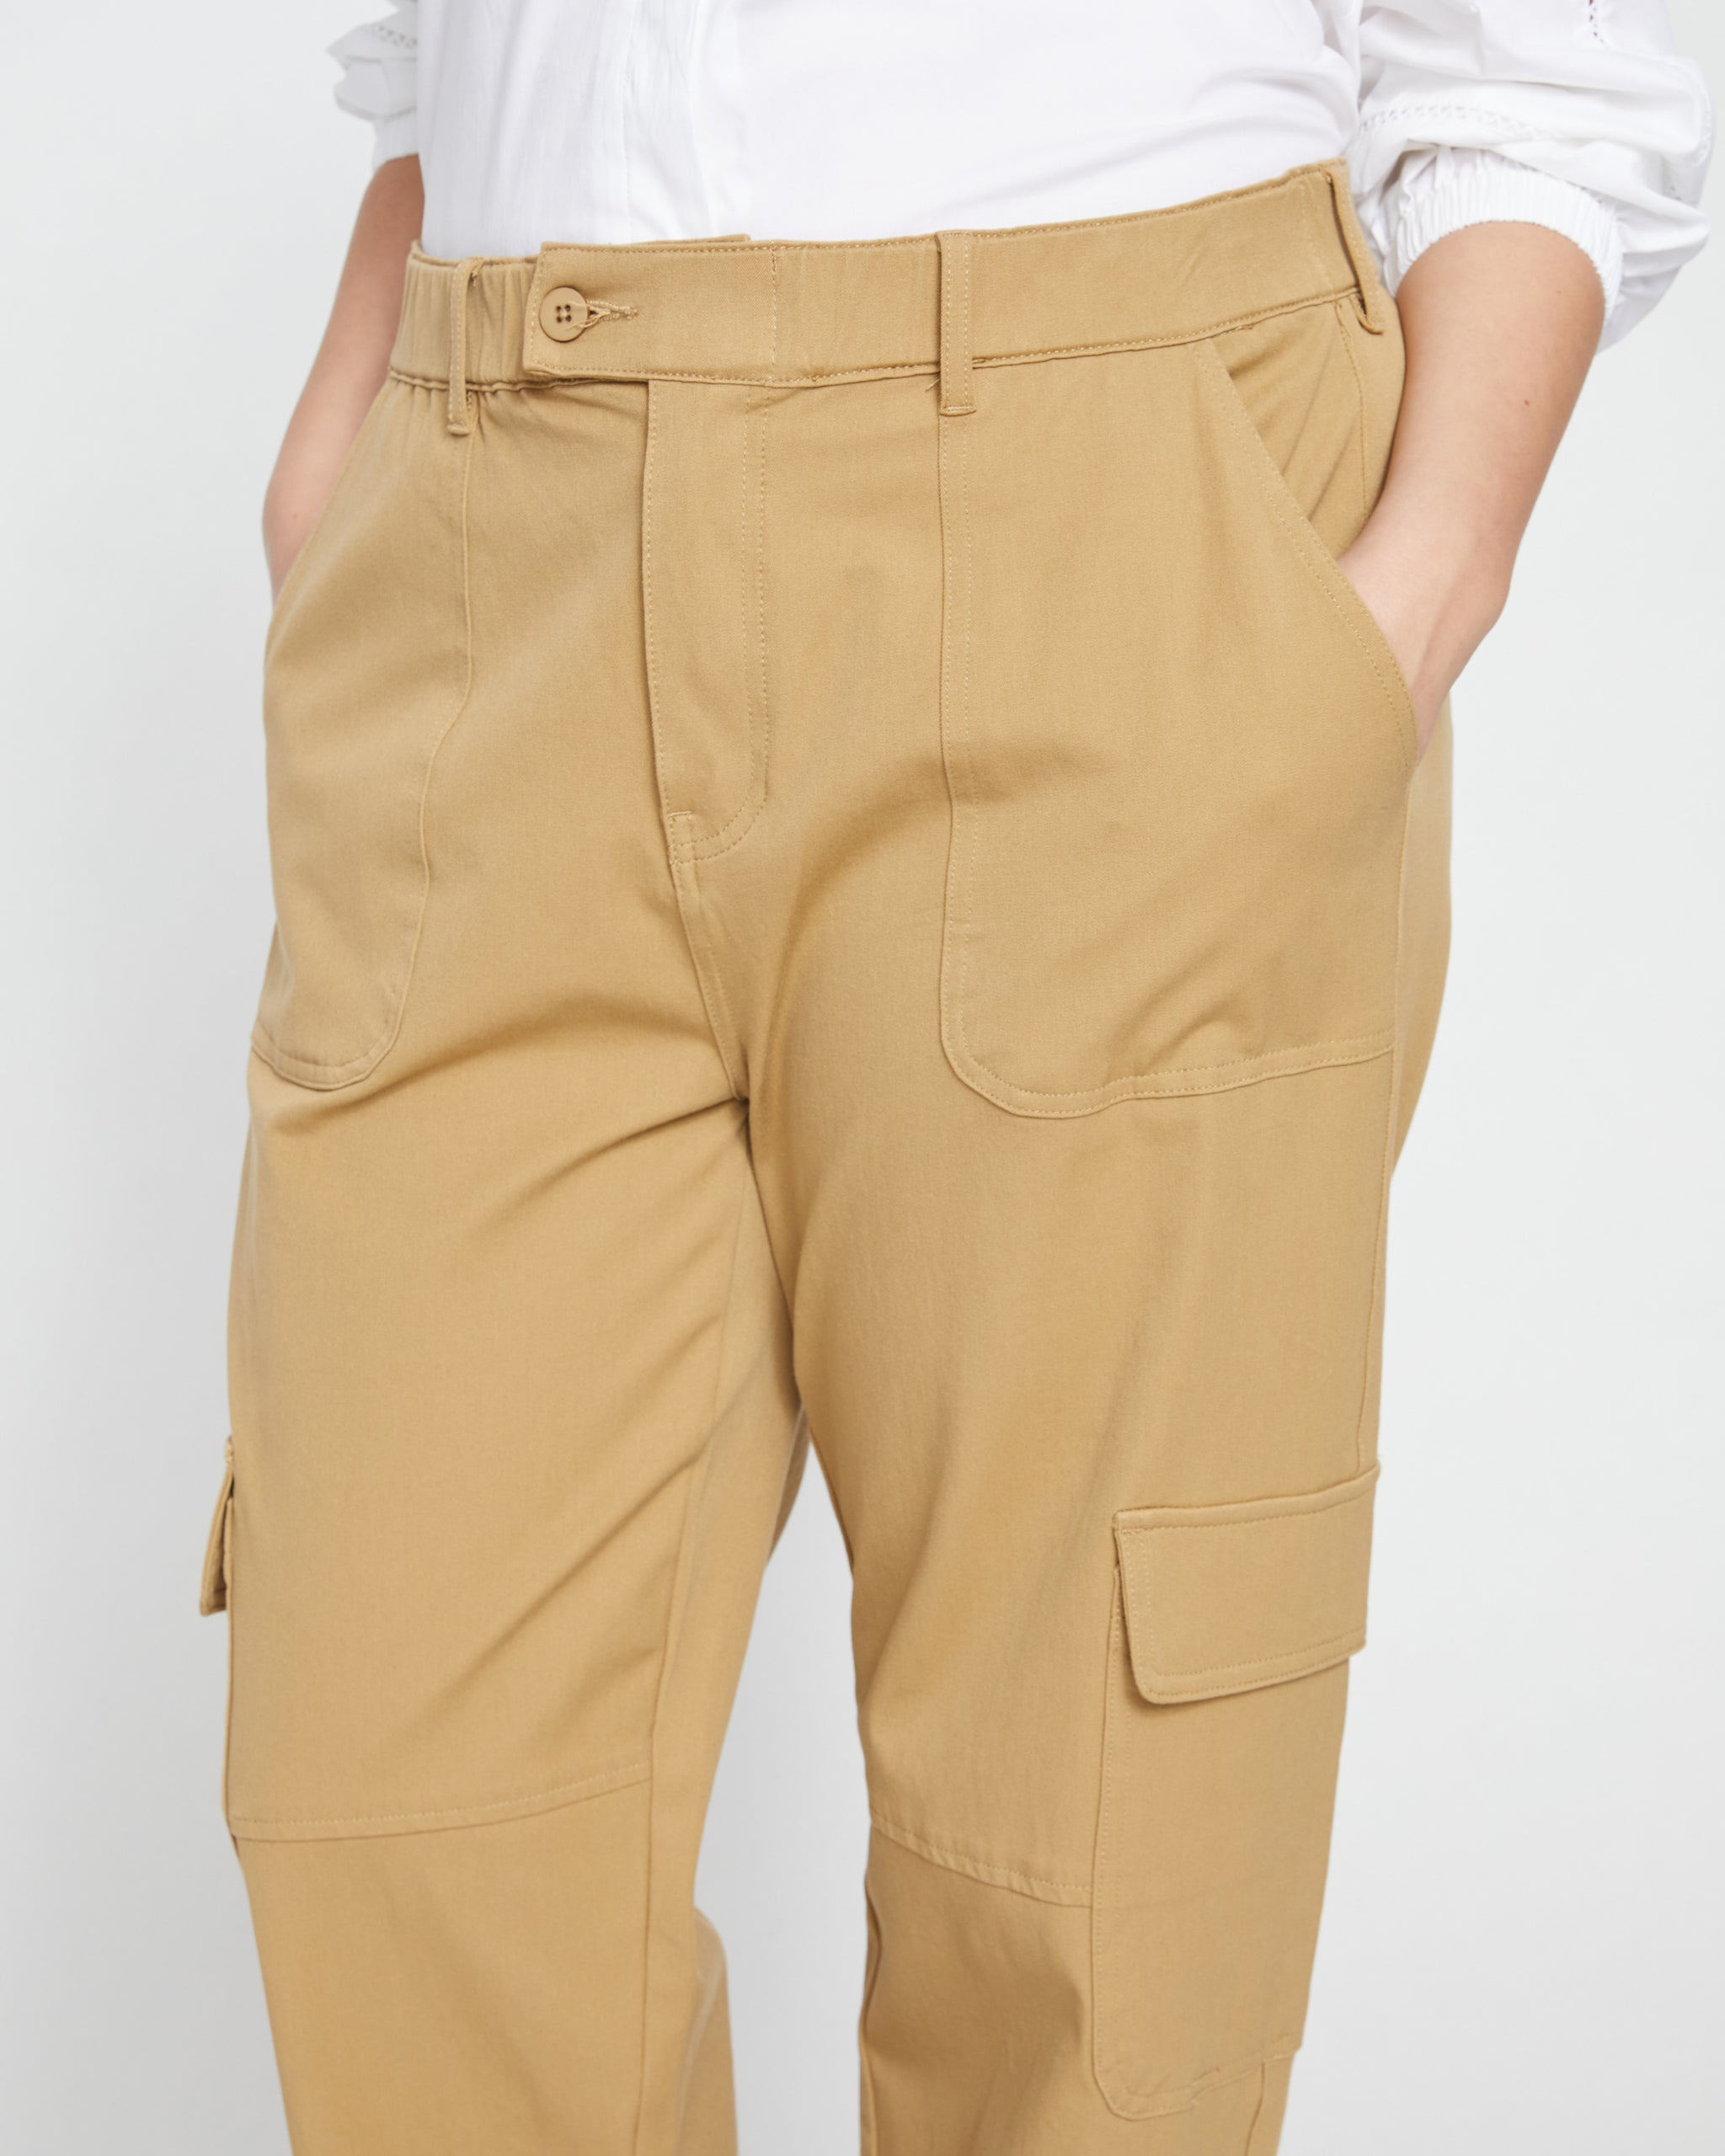 Karlee Stretch Cotton Twill Cargo Pants - Vintage Khaki